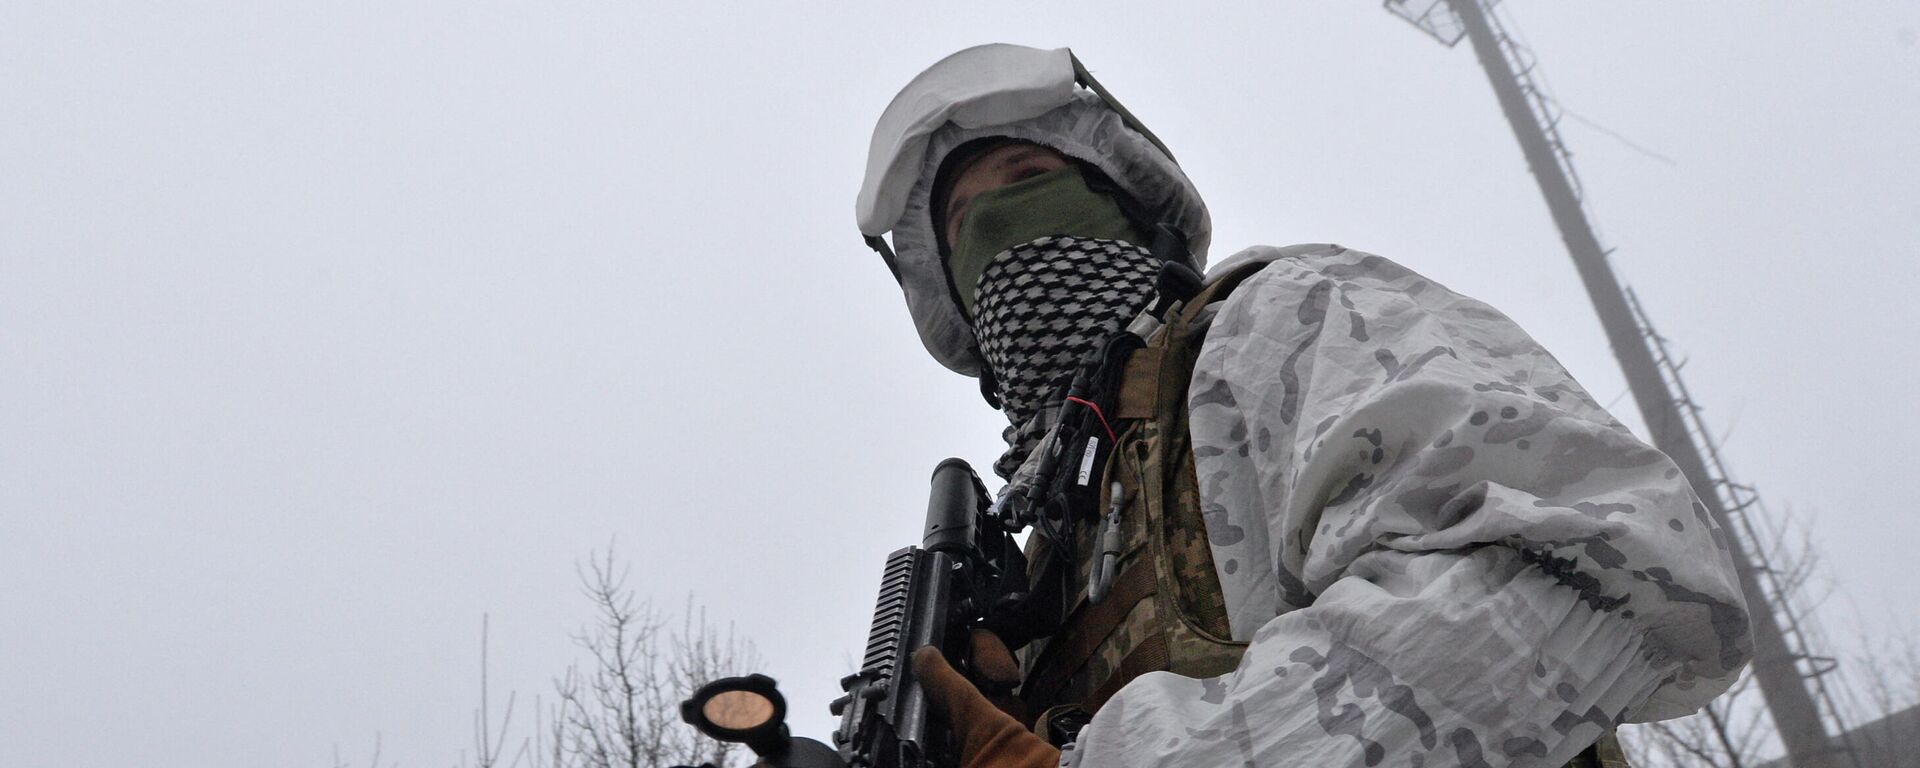 Soldado das Forças Armadas da Ucrânia nas proximidades da linha de contato na região de Donetsk, Ucrânia, 11 de fevereiro de 2022 - Sputnik Brasil, 1920, 13.02.2022